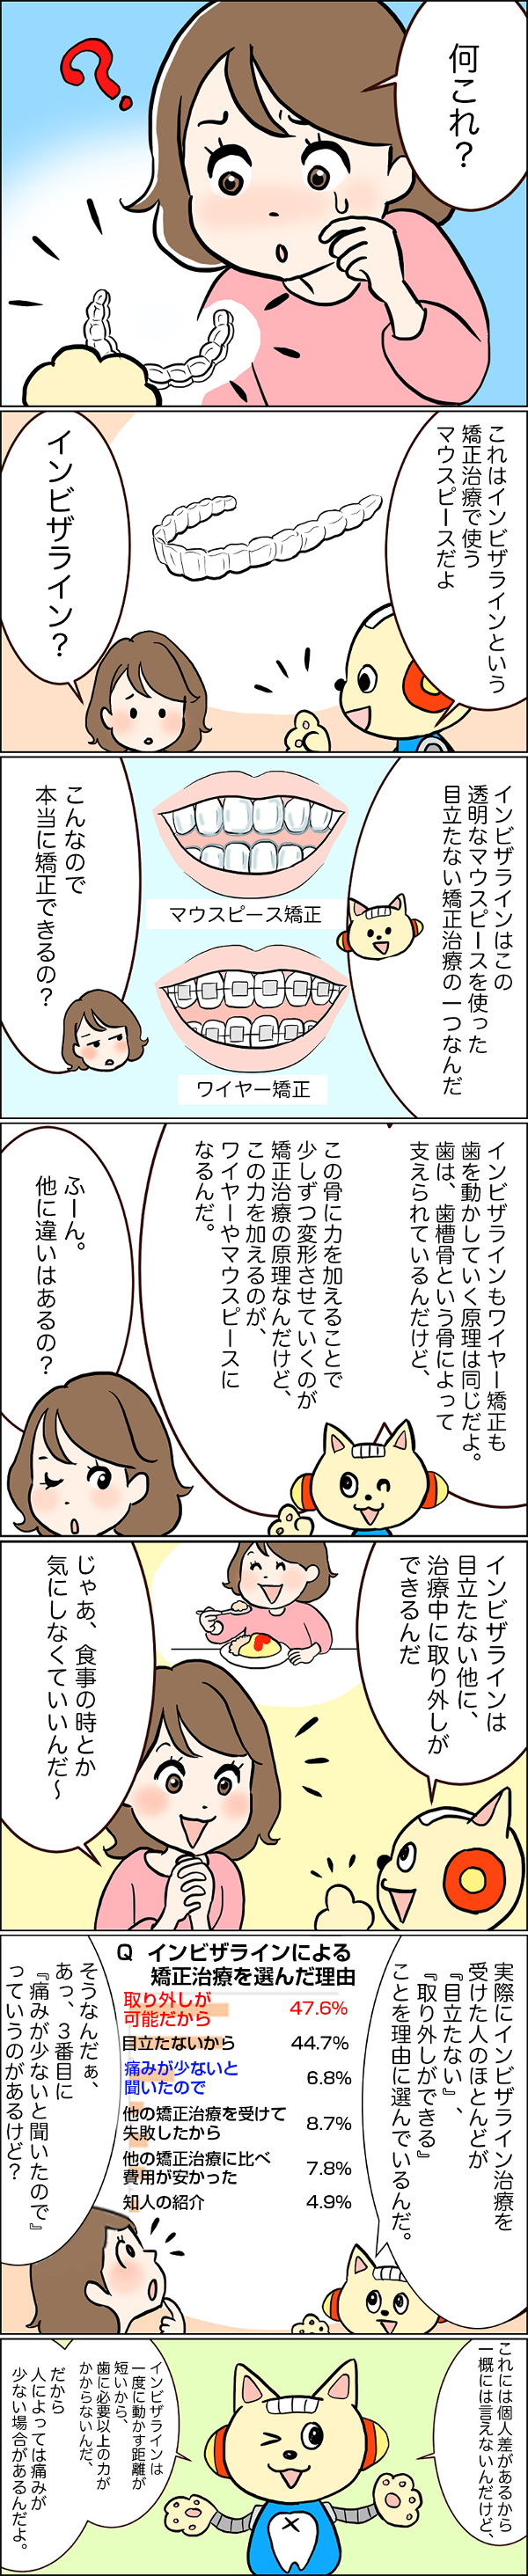 インビザライン治療_漫画sp_P3